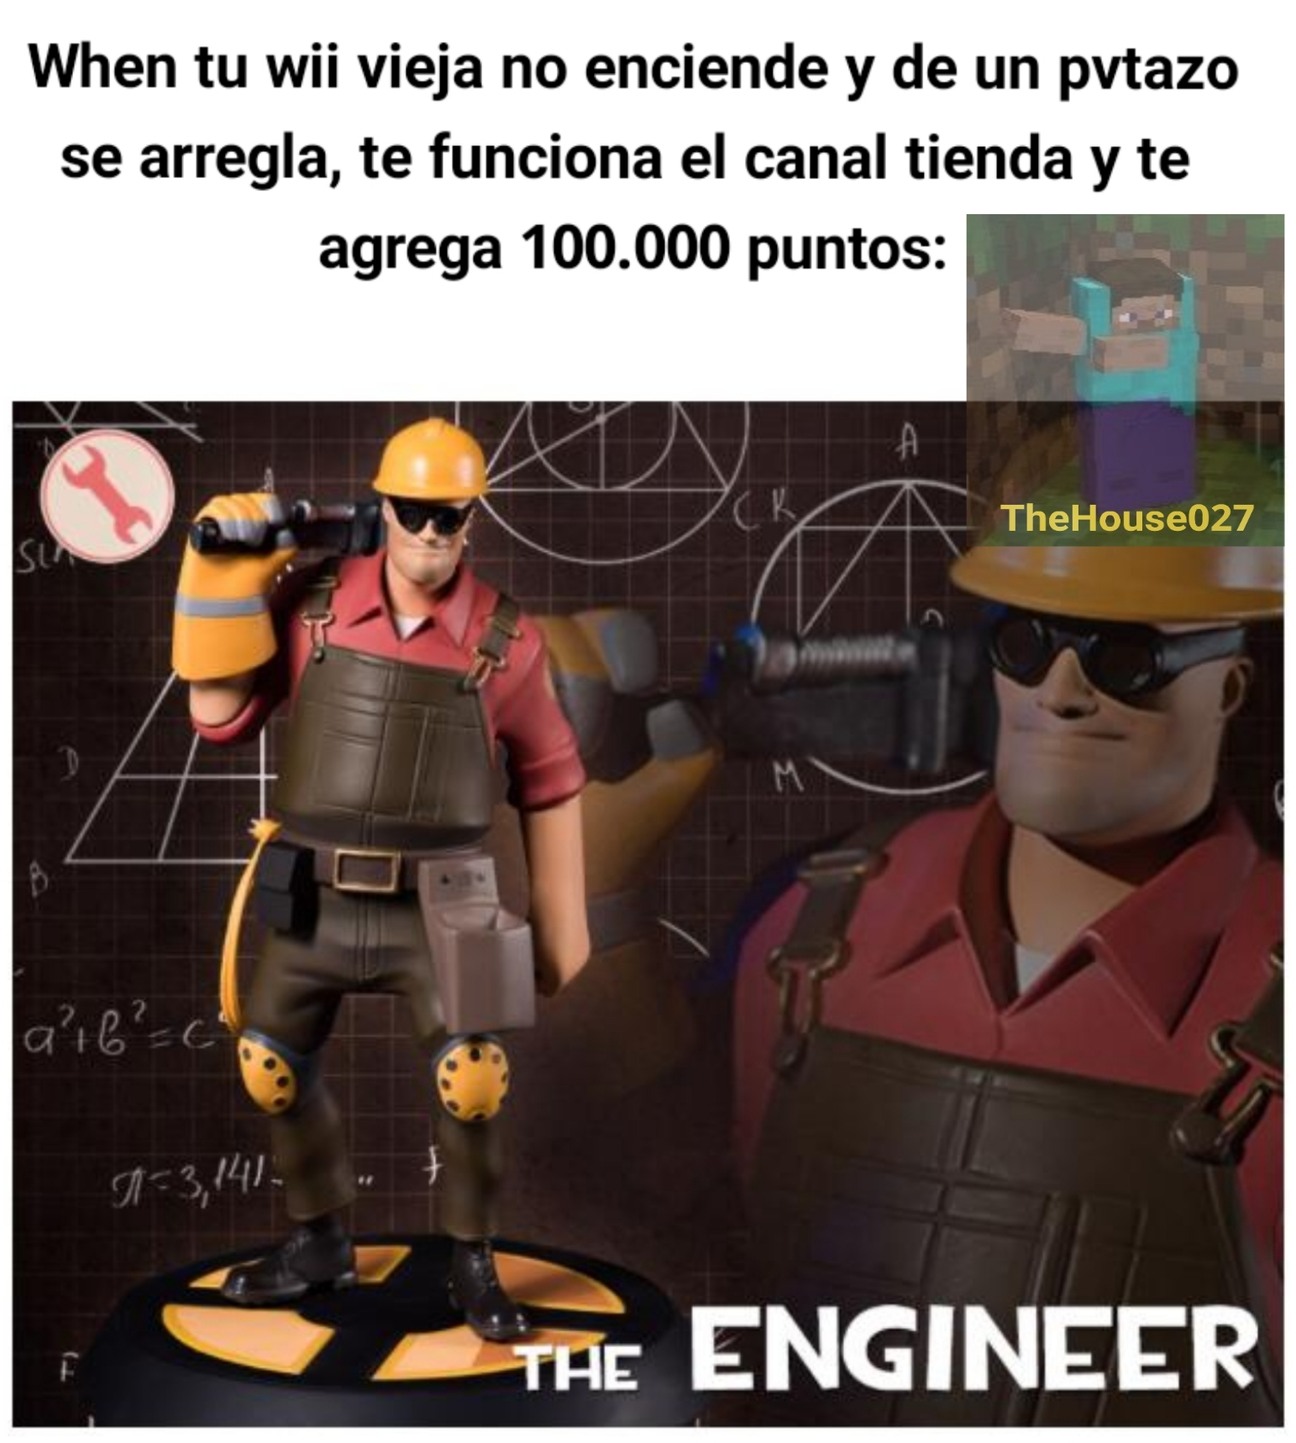 The wii engineer - meme